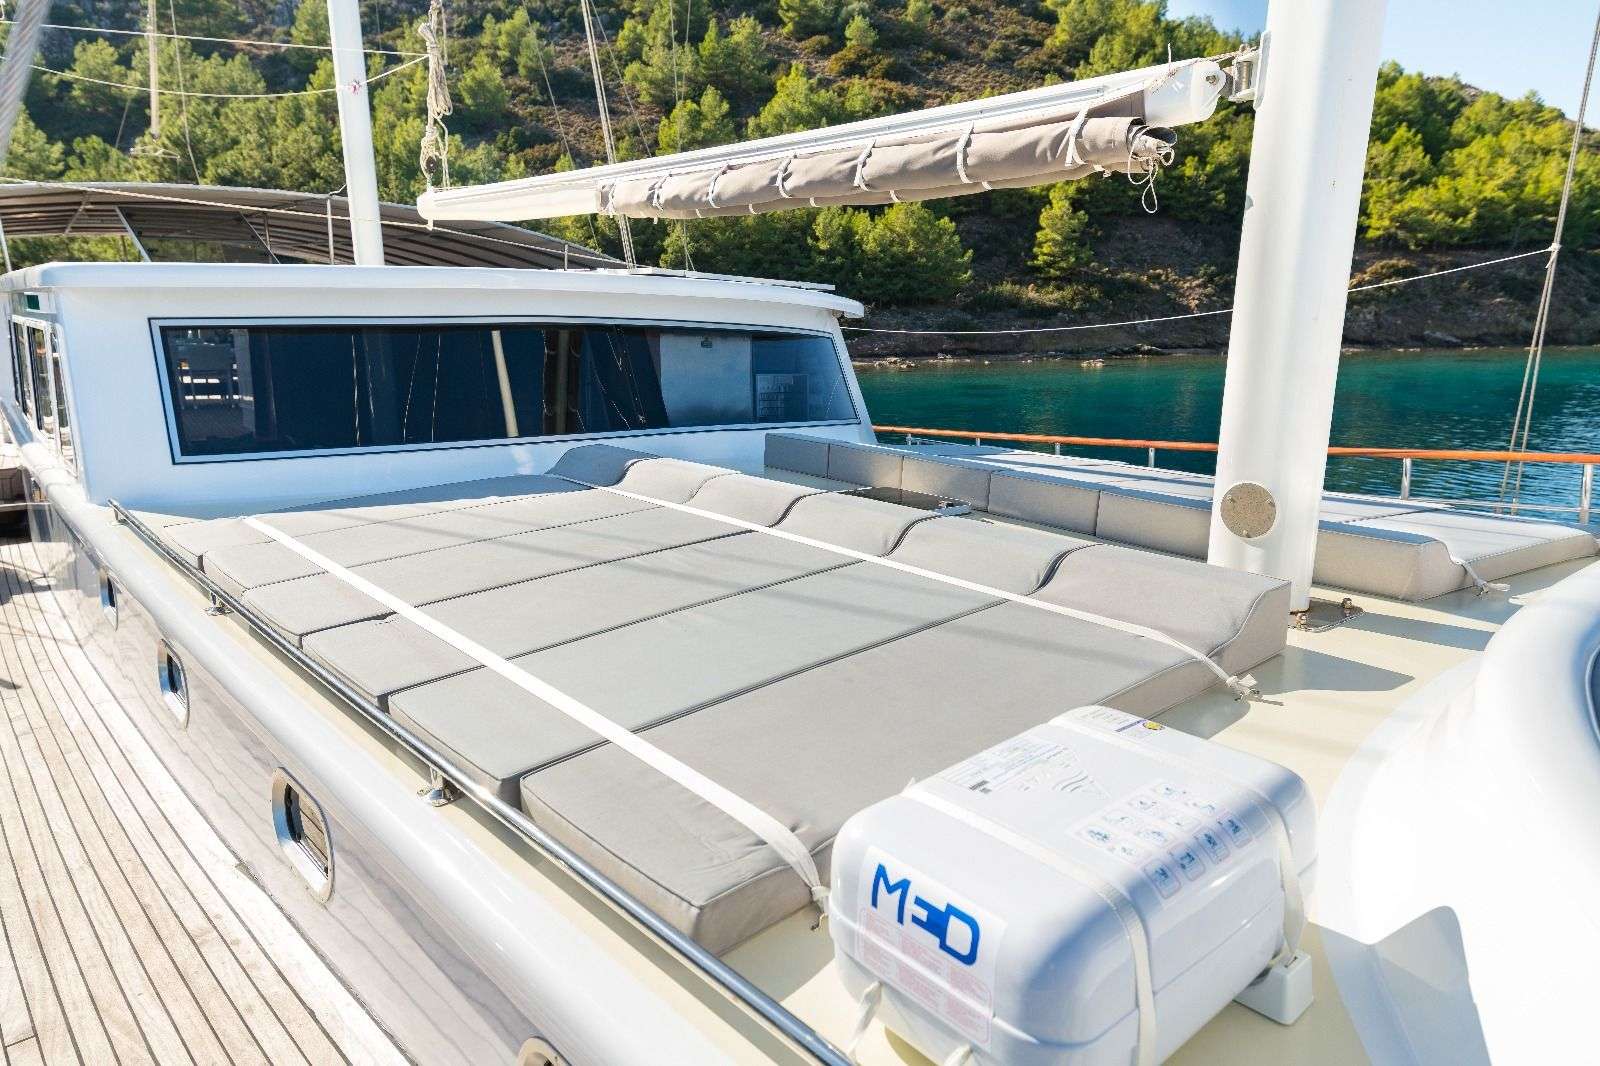 koray ege - Yacht Charter Neos Marmaras & Boat hire in Greece & Turkey 3